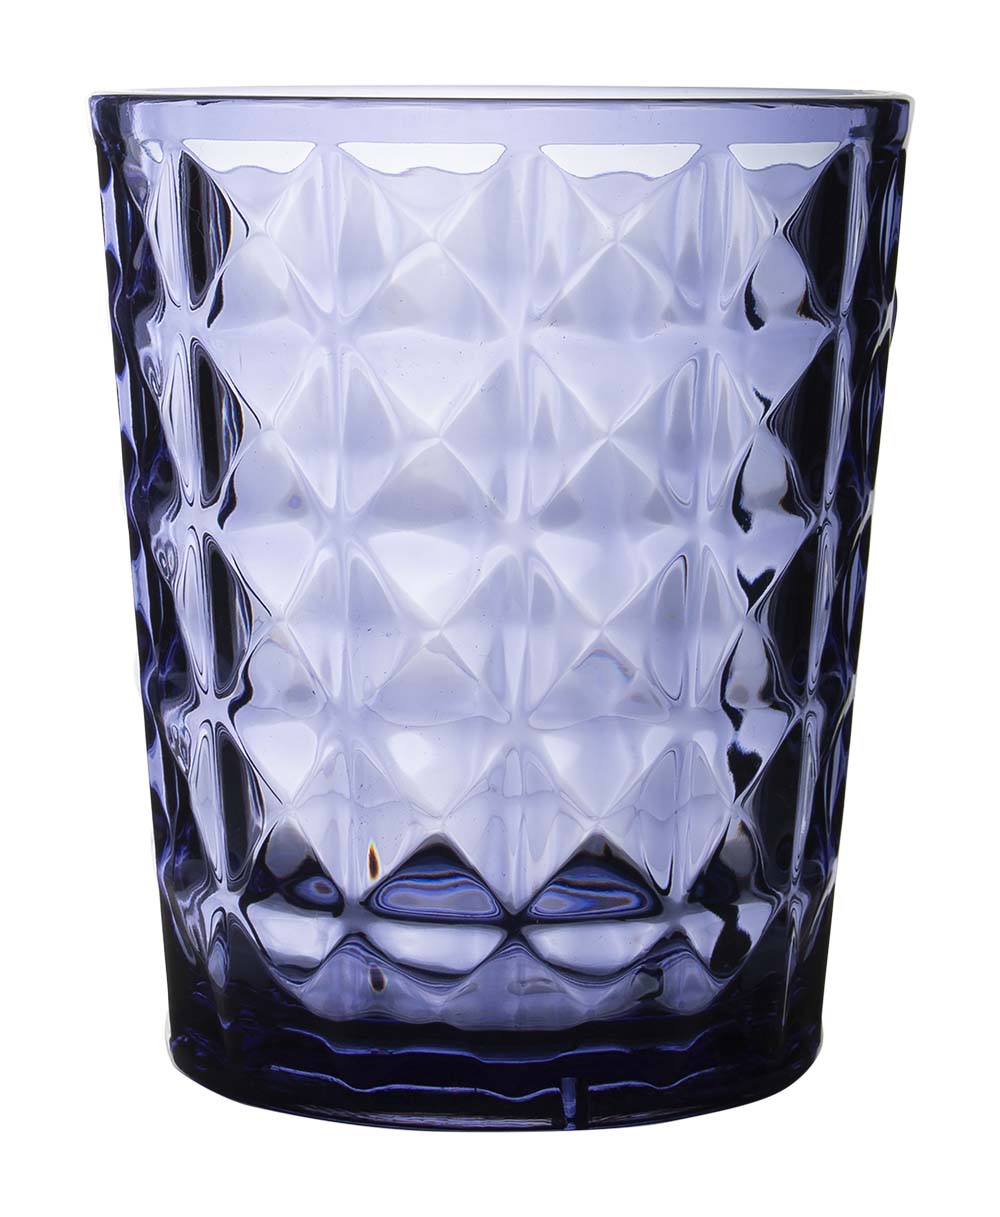 6967962 Een stijlvol donkerblauw waterglas uit de Stone line collectie. Vrijwel onbreekbaar door hoogwaardig SAN materiaal. Zeer gemakkelijk te reinigen en langdurig te gebruiken, wat het glas erg duurzaam maakt. Daarnaast is het waterglas erg lichtgewicht en krasbestendig. Inhoud: 480 ml.